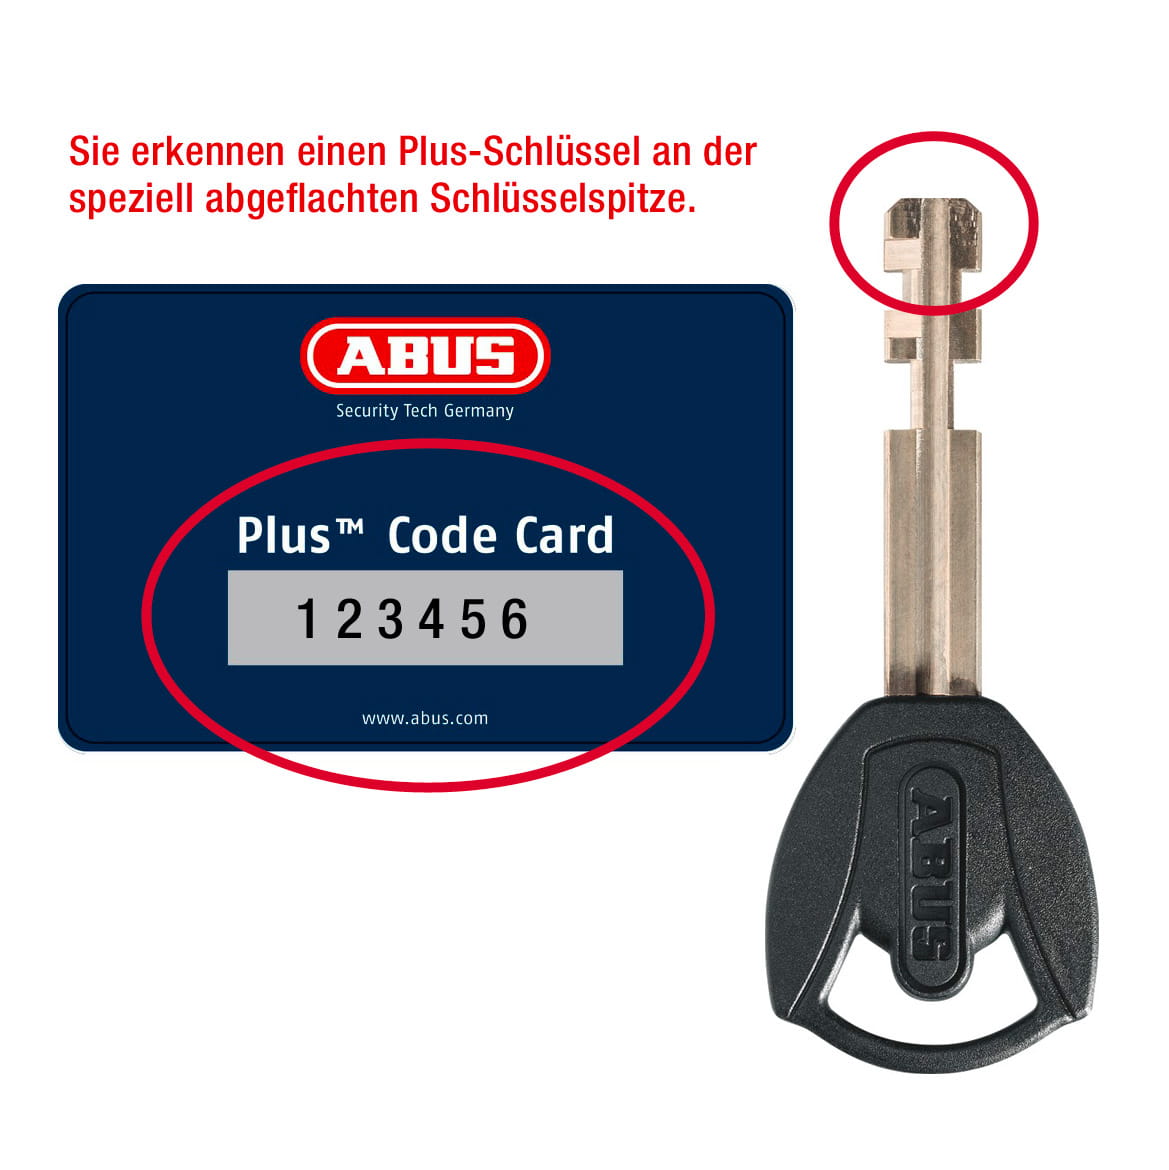 ABUS PLUS Replacement Key LED Light Key